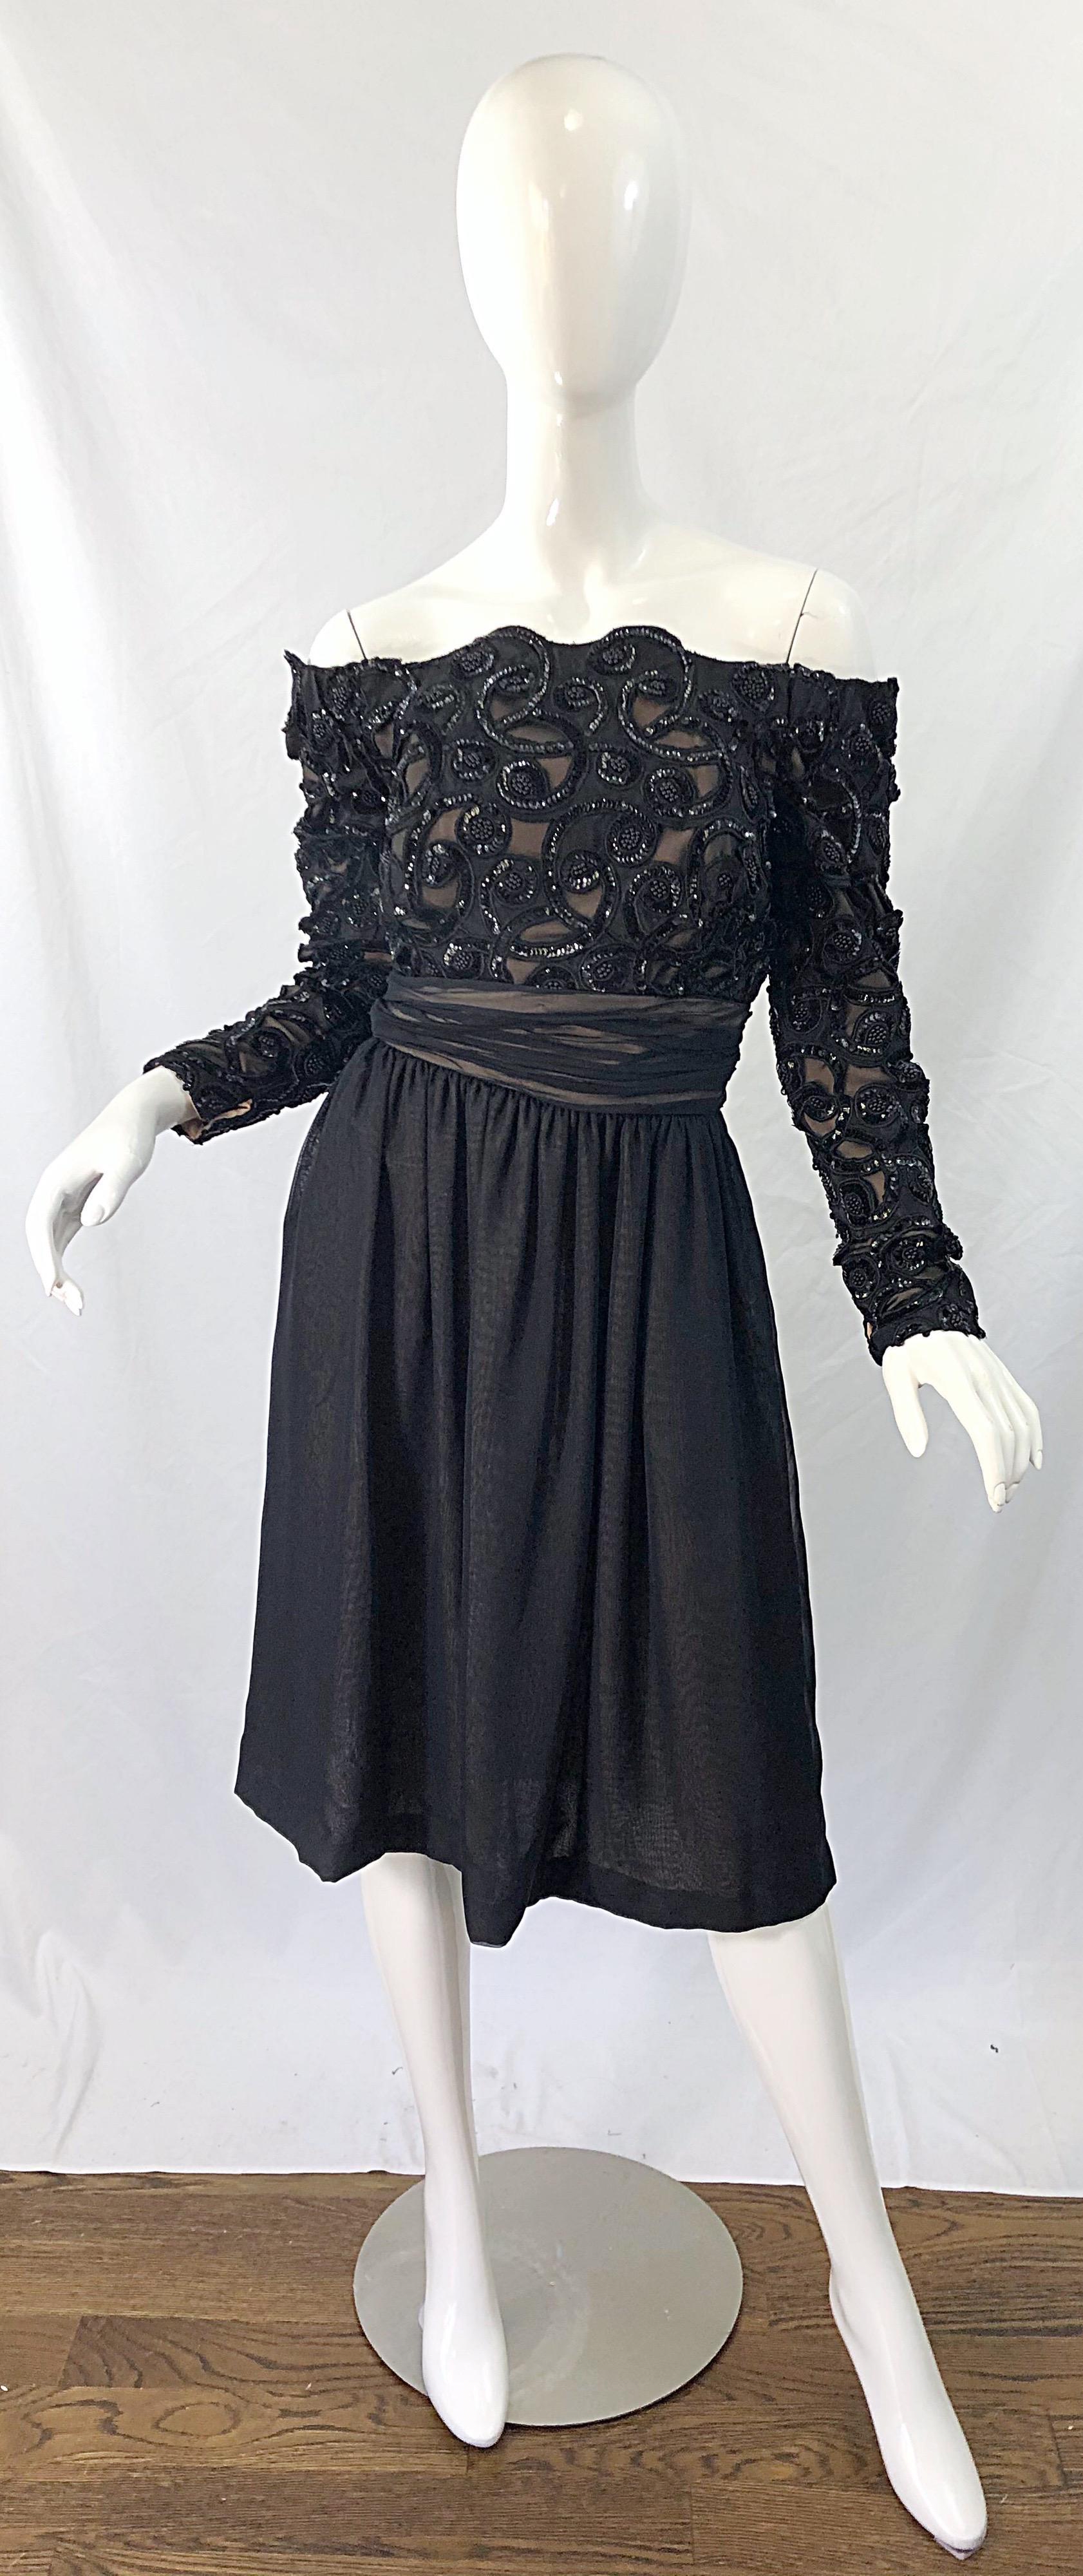 1980 / 80s KEVAL HALL COUTURE robe noire à paillettes taille 10 ! Comprend une sous-couche en mousseline de soie nue et un corsage en dentelle et paillettes. Jupe fluide en mousseline de soie. Corsage désossé. Fermeture éclair cachée dans le dos